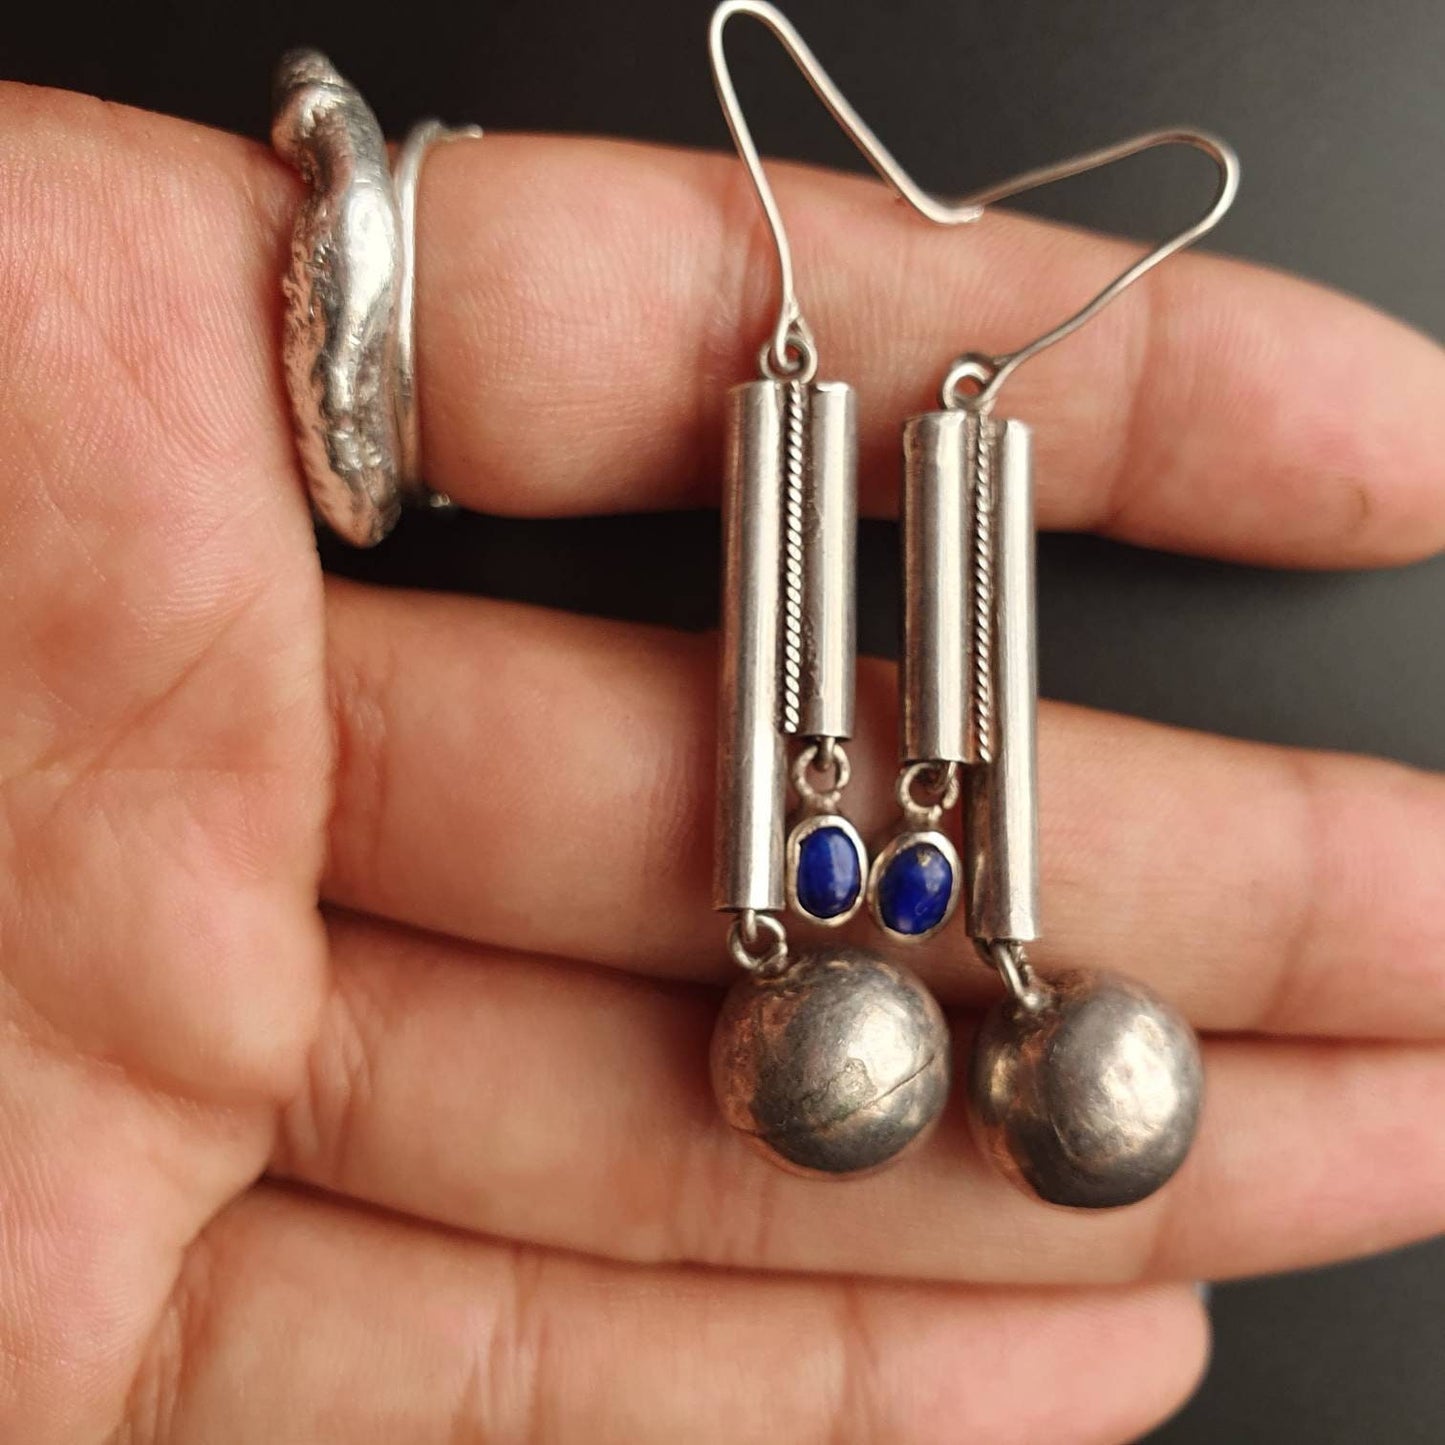 Vintage earrings,retro earrings, jewellery, handmade, sterling silver, gifts, unisex,lapis lazuli gemstone, dangle earrings.art deco, unique